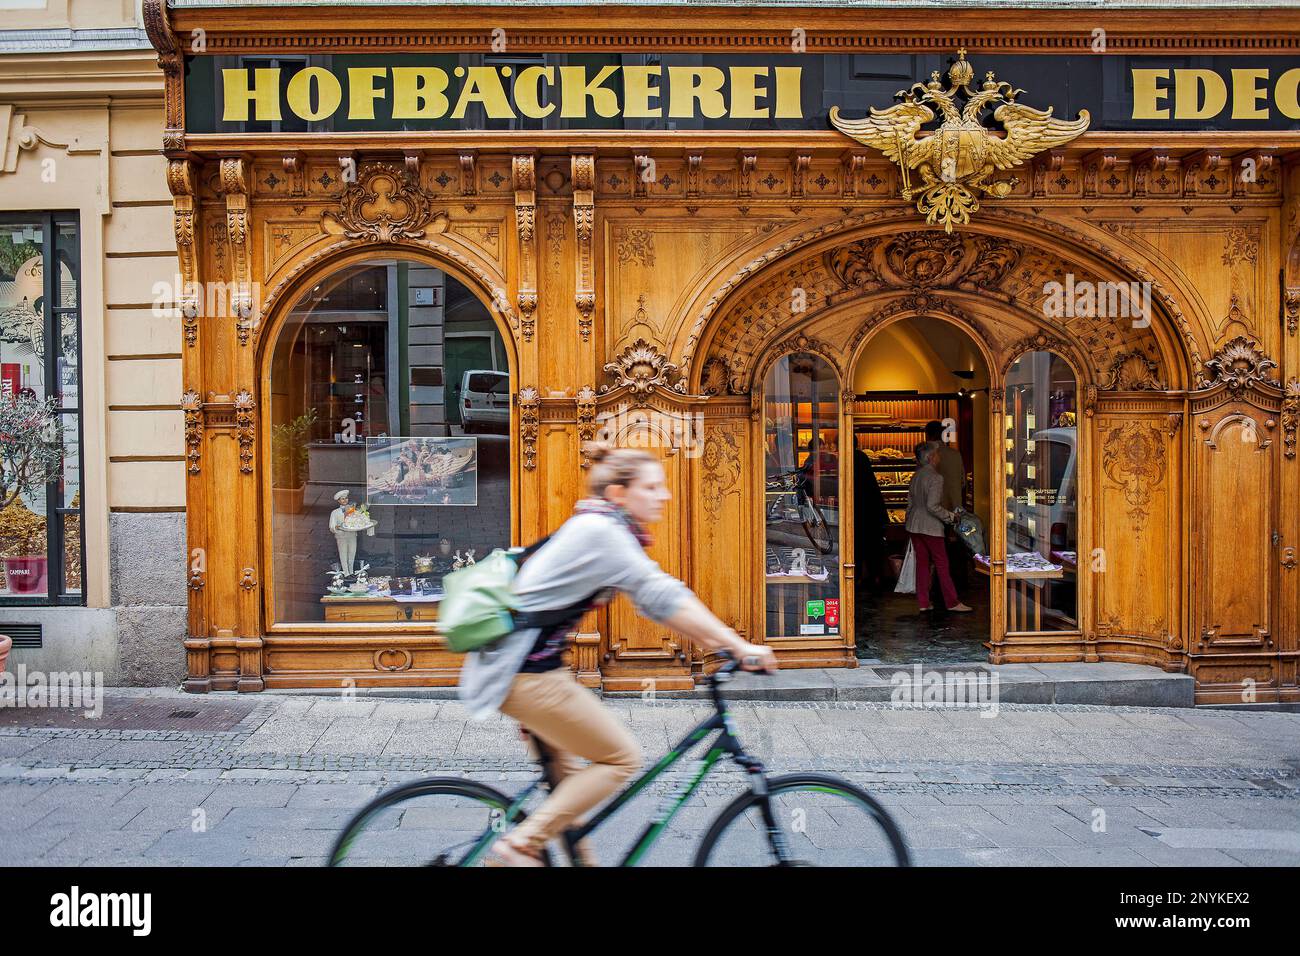 Hofbaeckerei Edegger-Tax in Hofgasse, court bakery, Graz, Austria, Europe Stock Photo